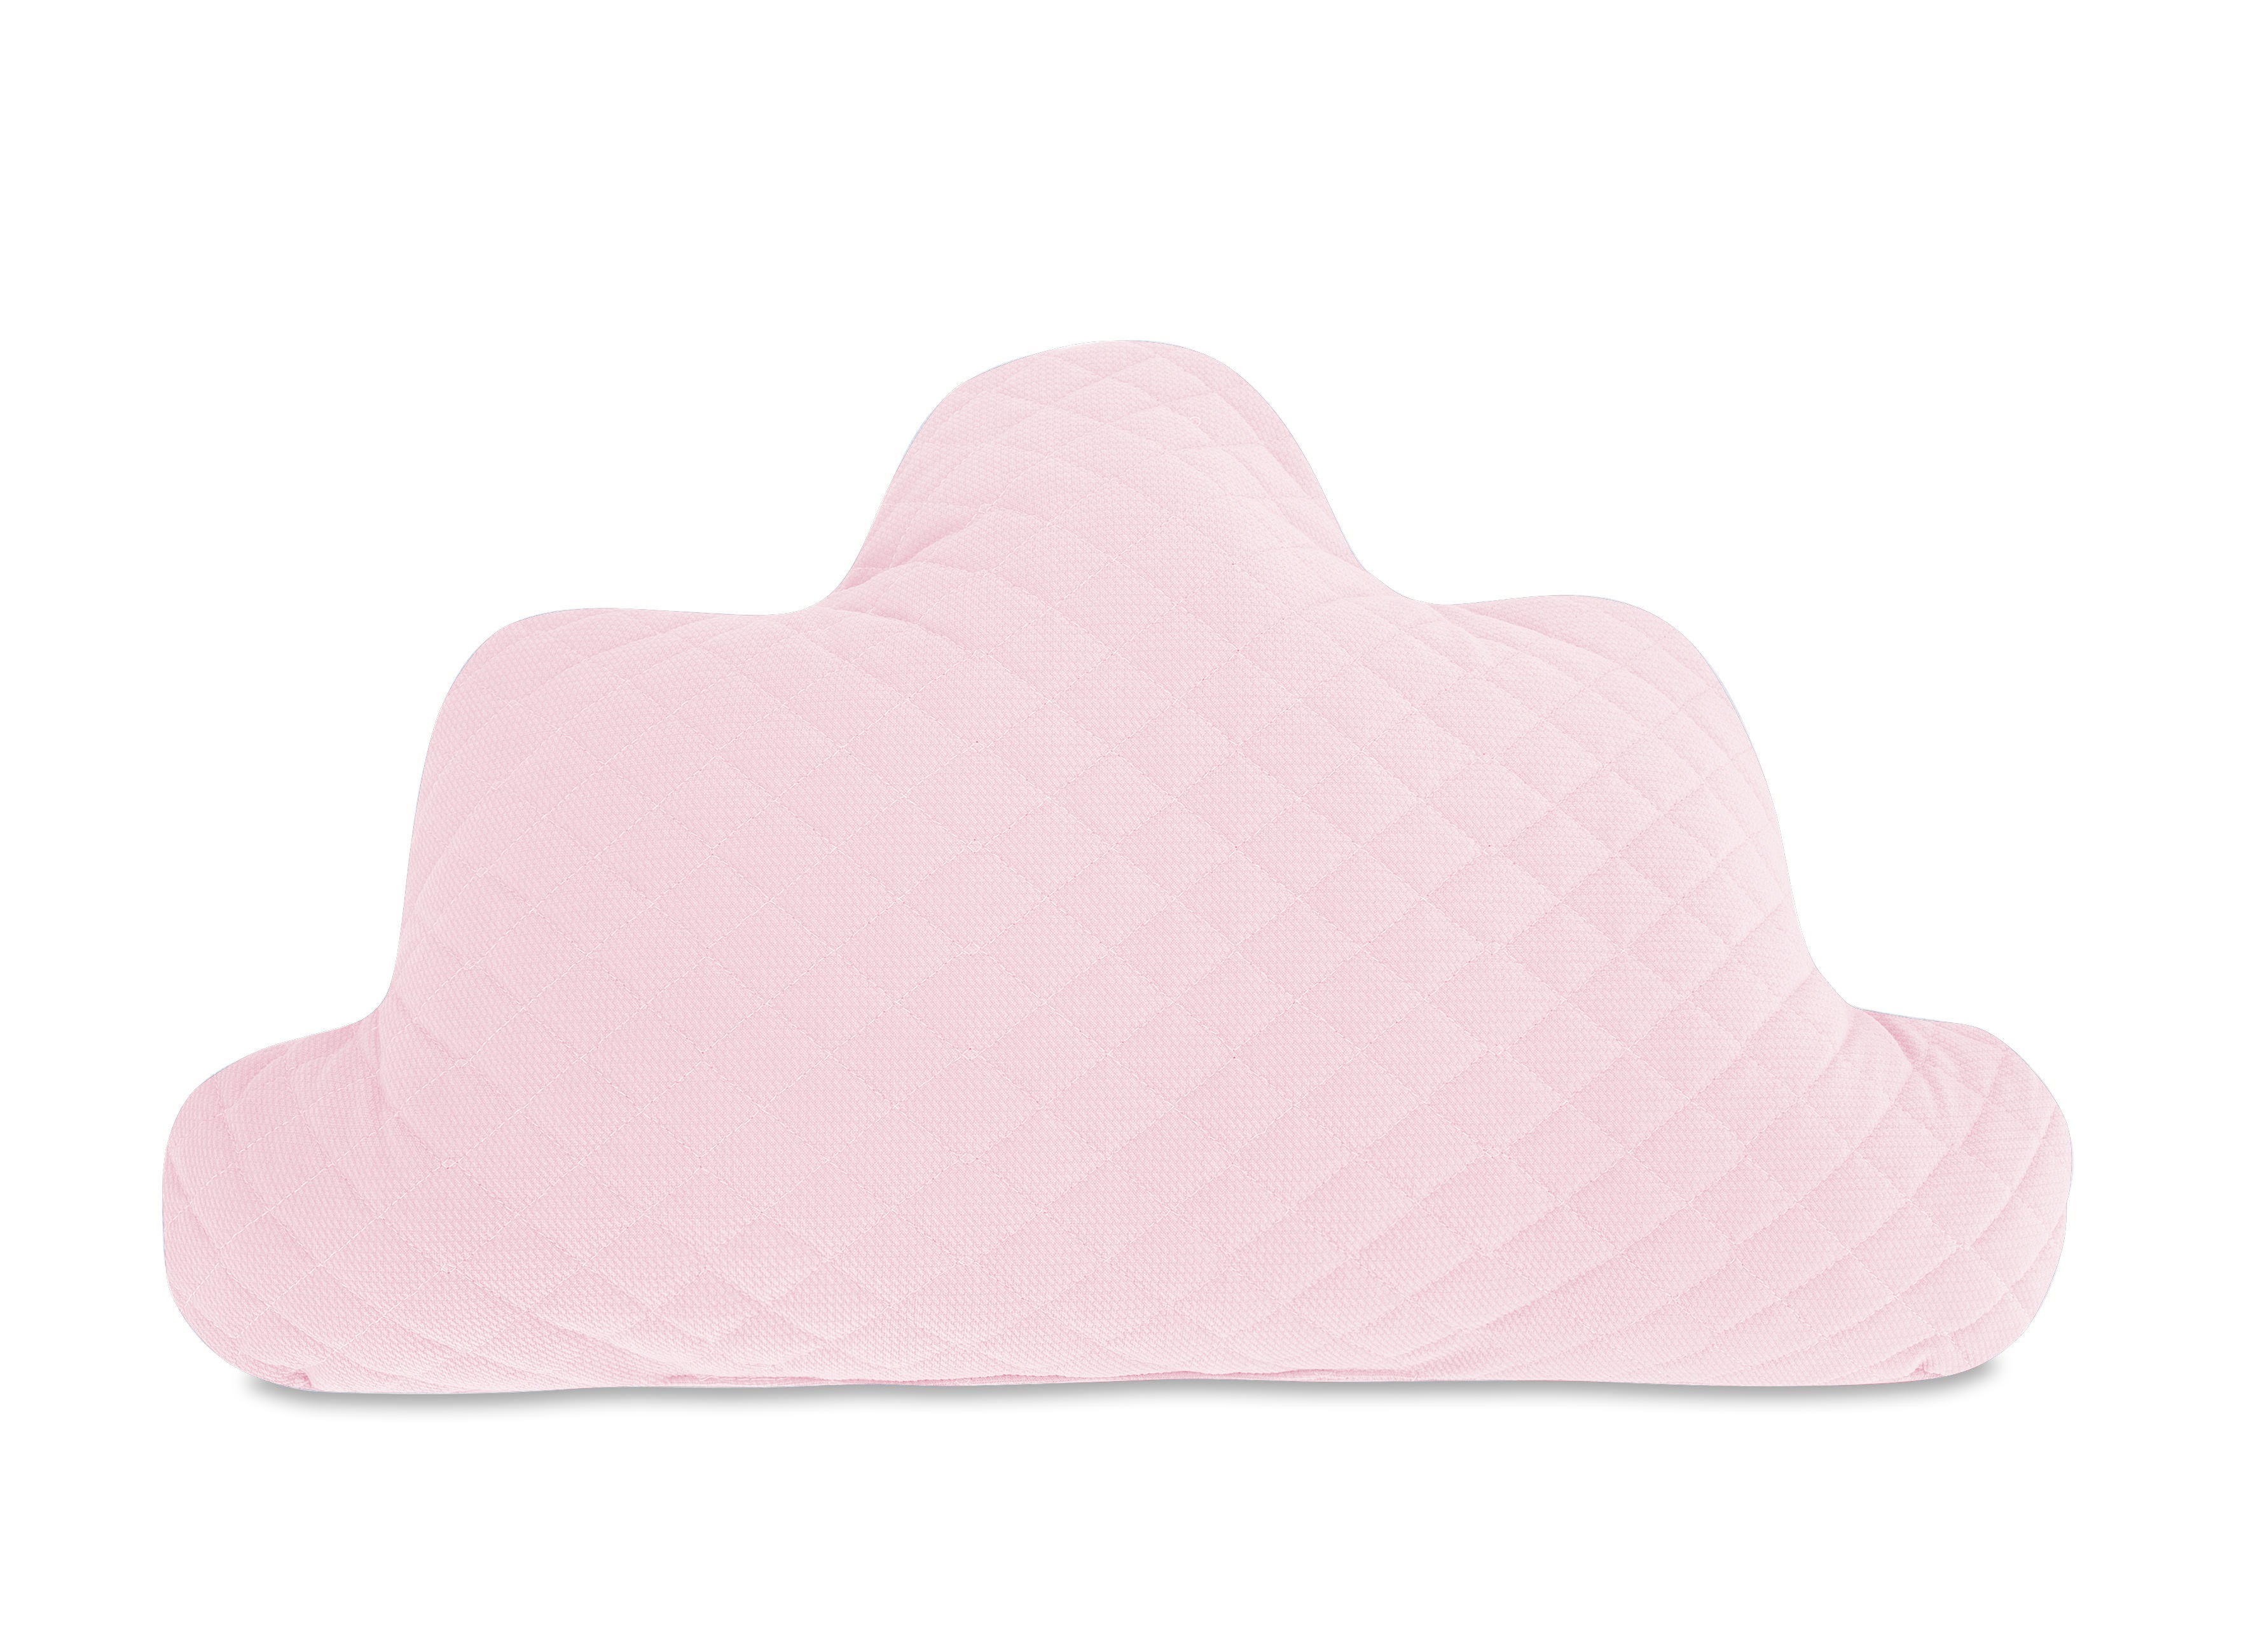 Felhőpárna rózsaszín Velvet